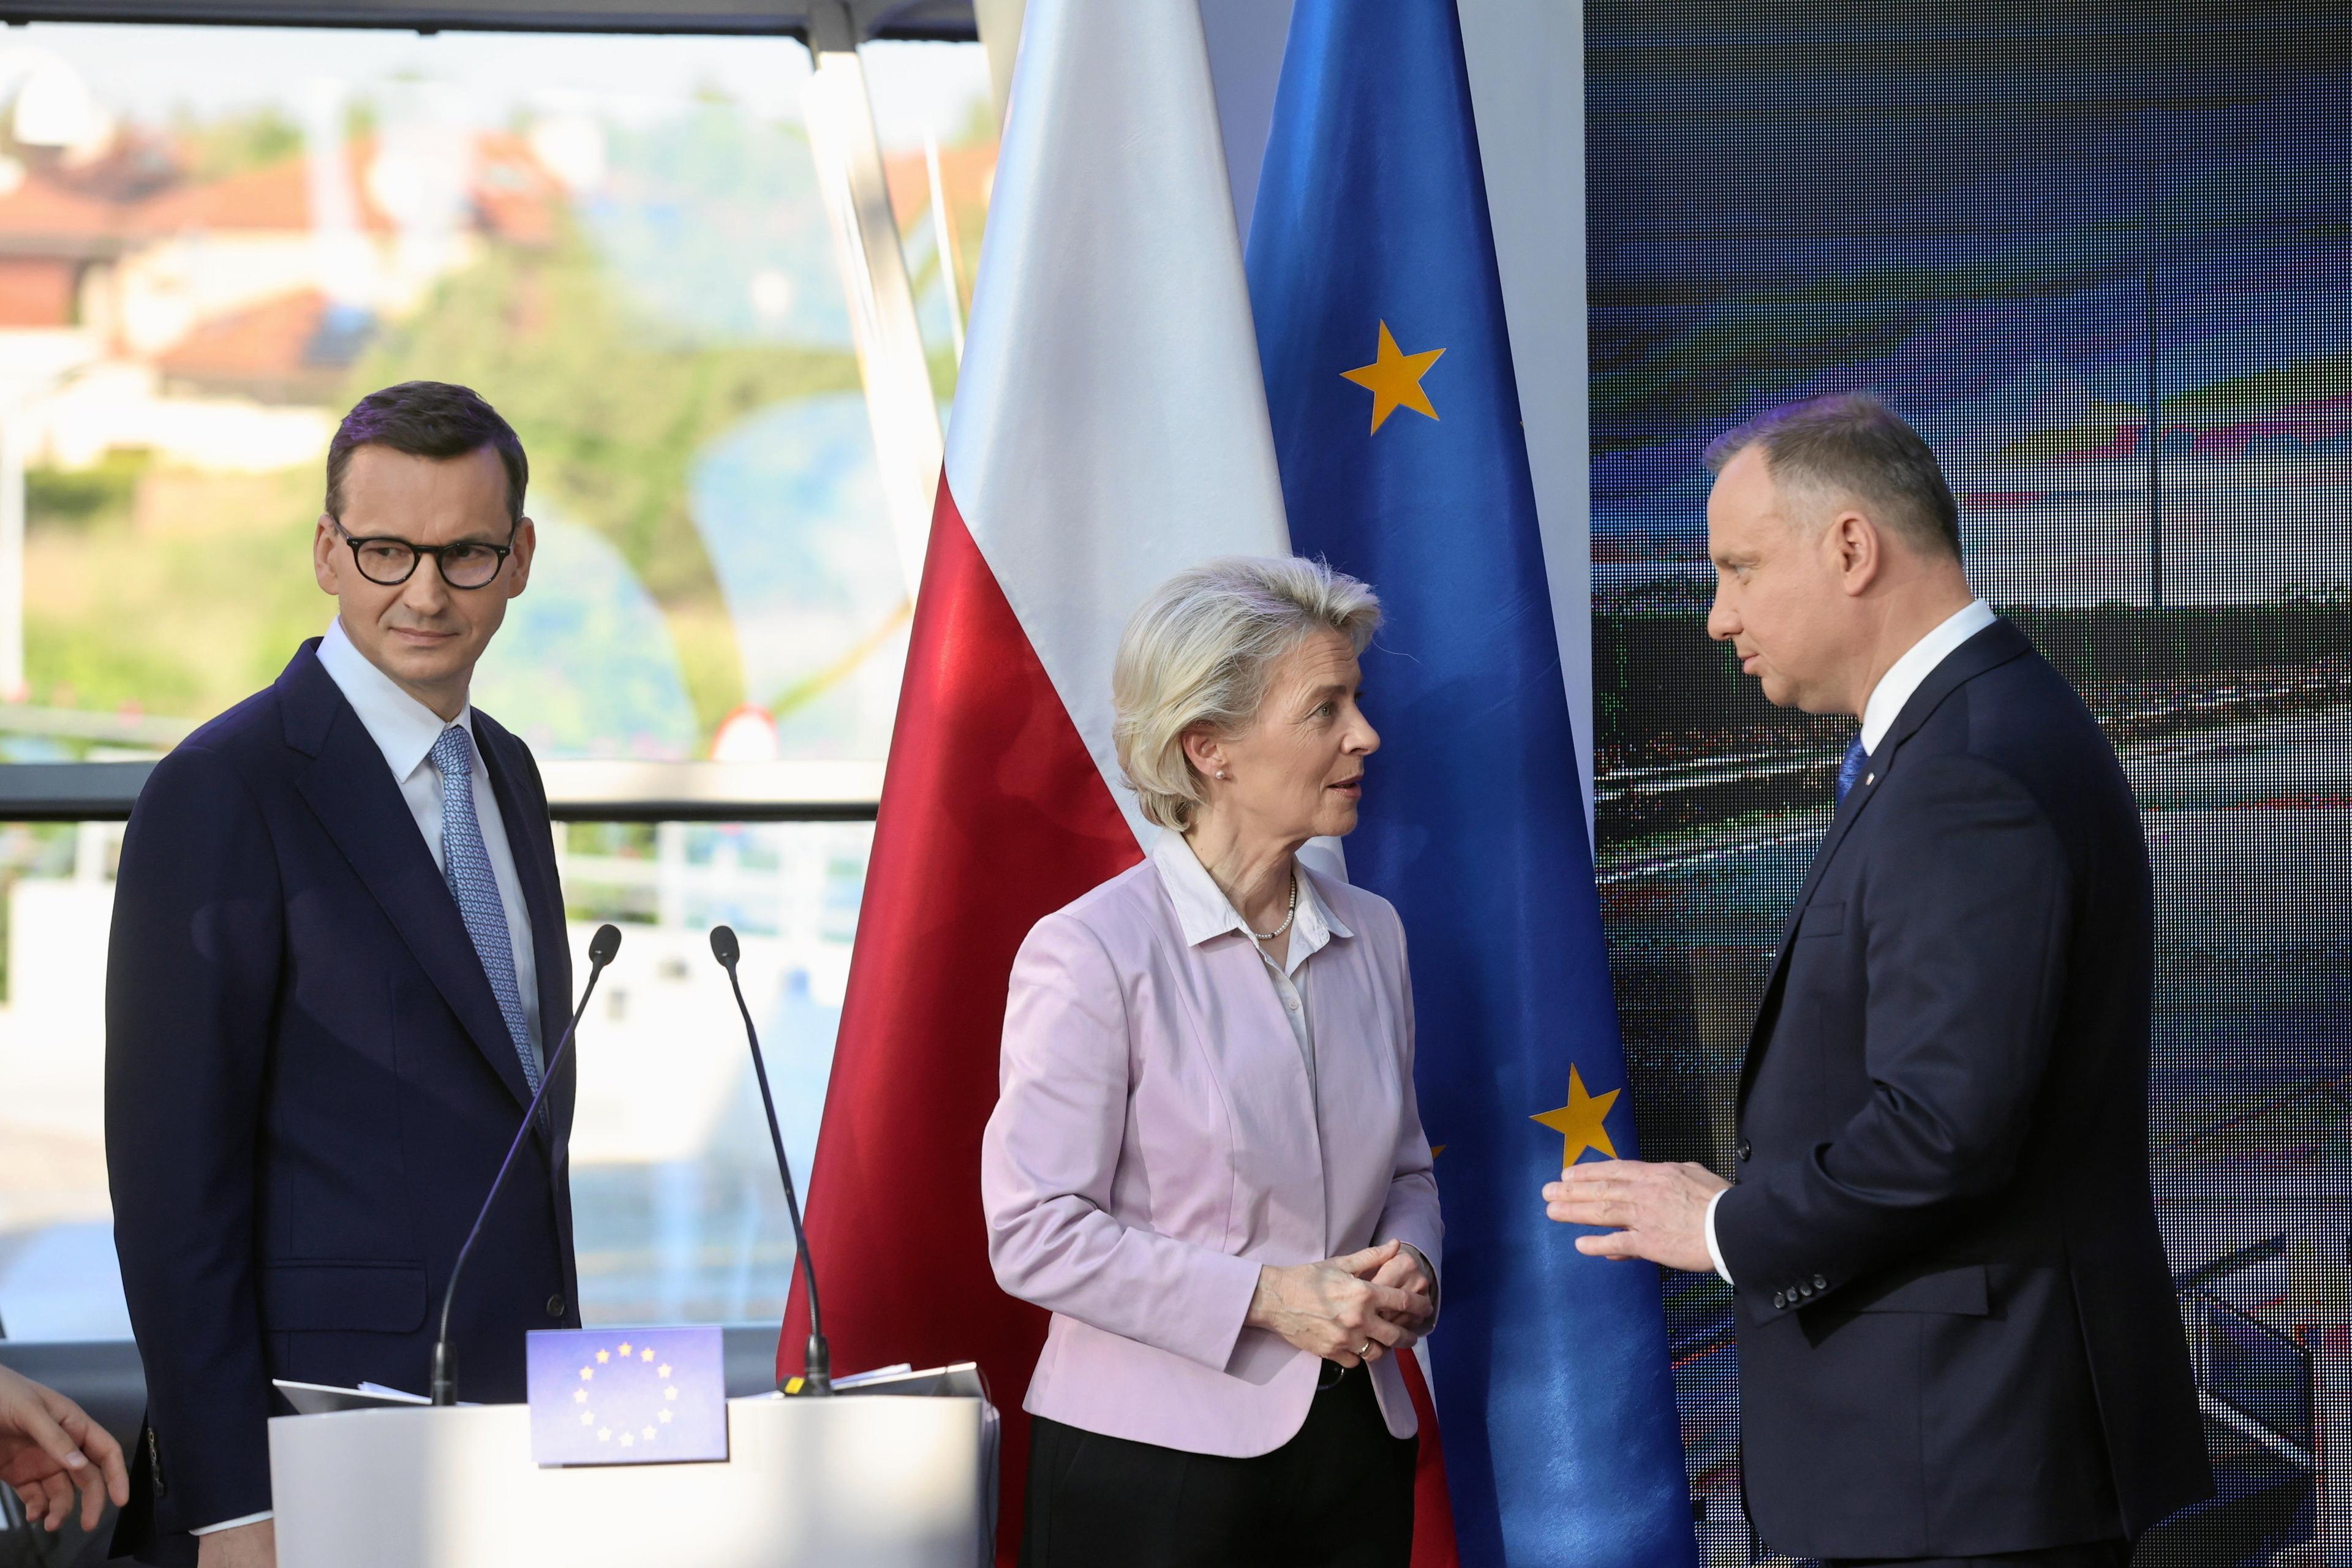 Premier Morawiecki, URsula von der Leyen i prezydent Duda rozmawiają. Przed nimi mównica, za nimi flagi Polski oraz Unii Europejskiej